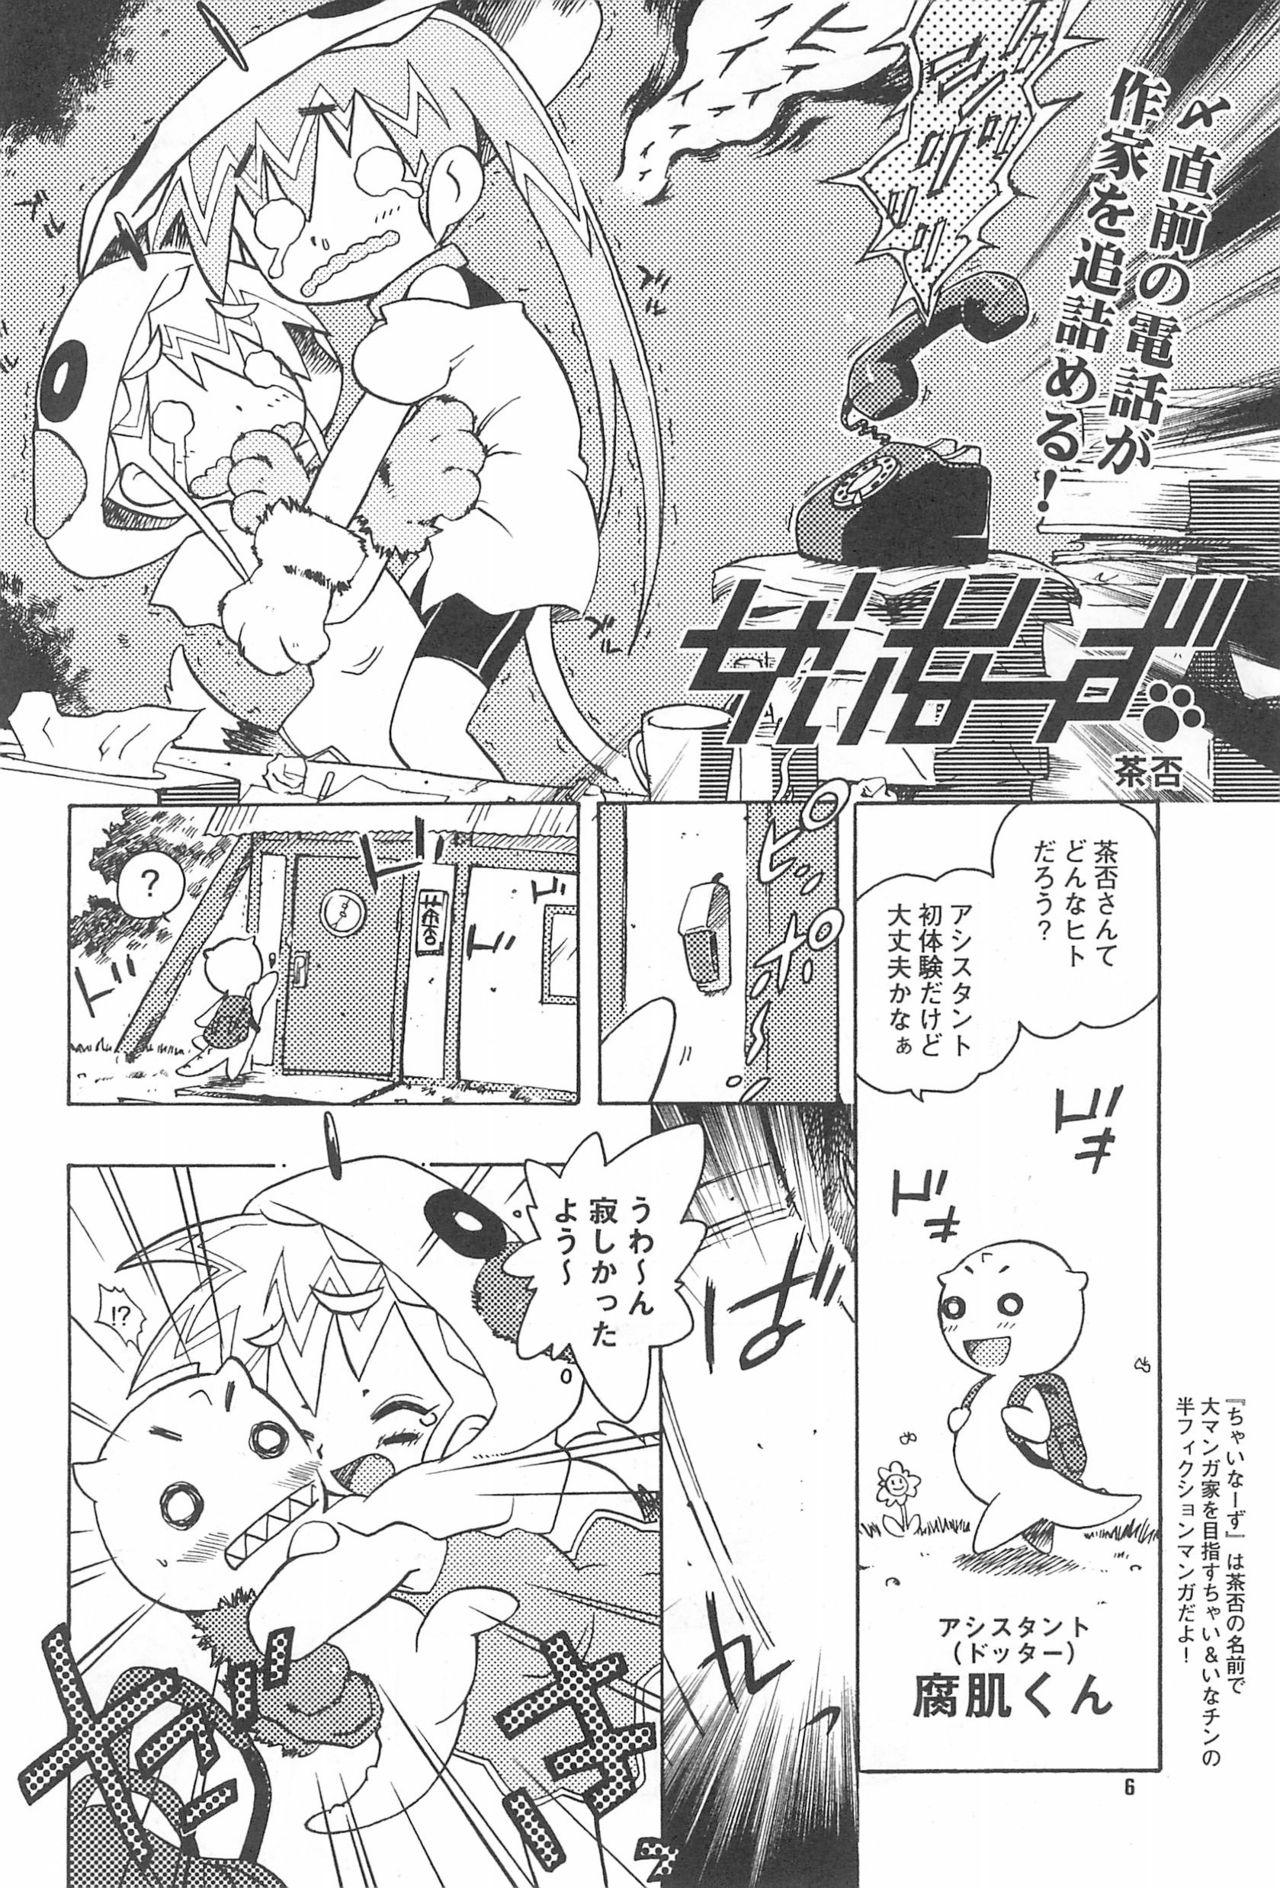 Sex Party Rokusai+2 Cam - Page 6